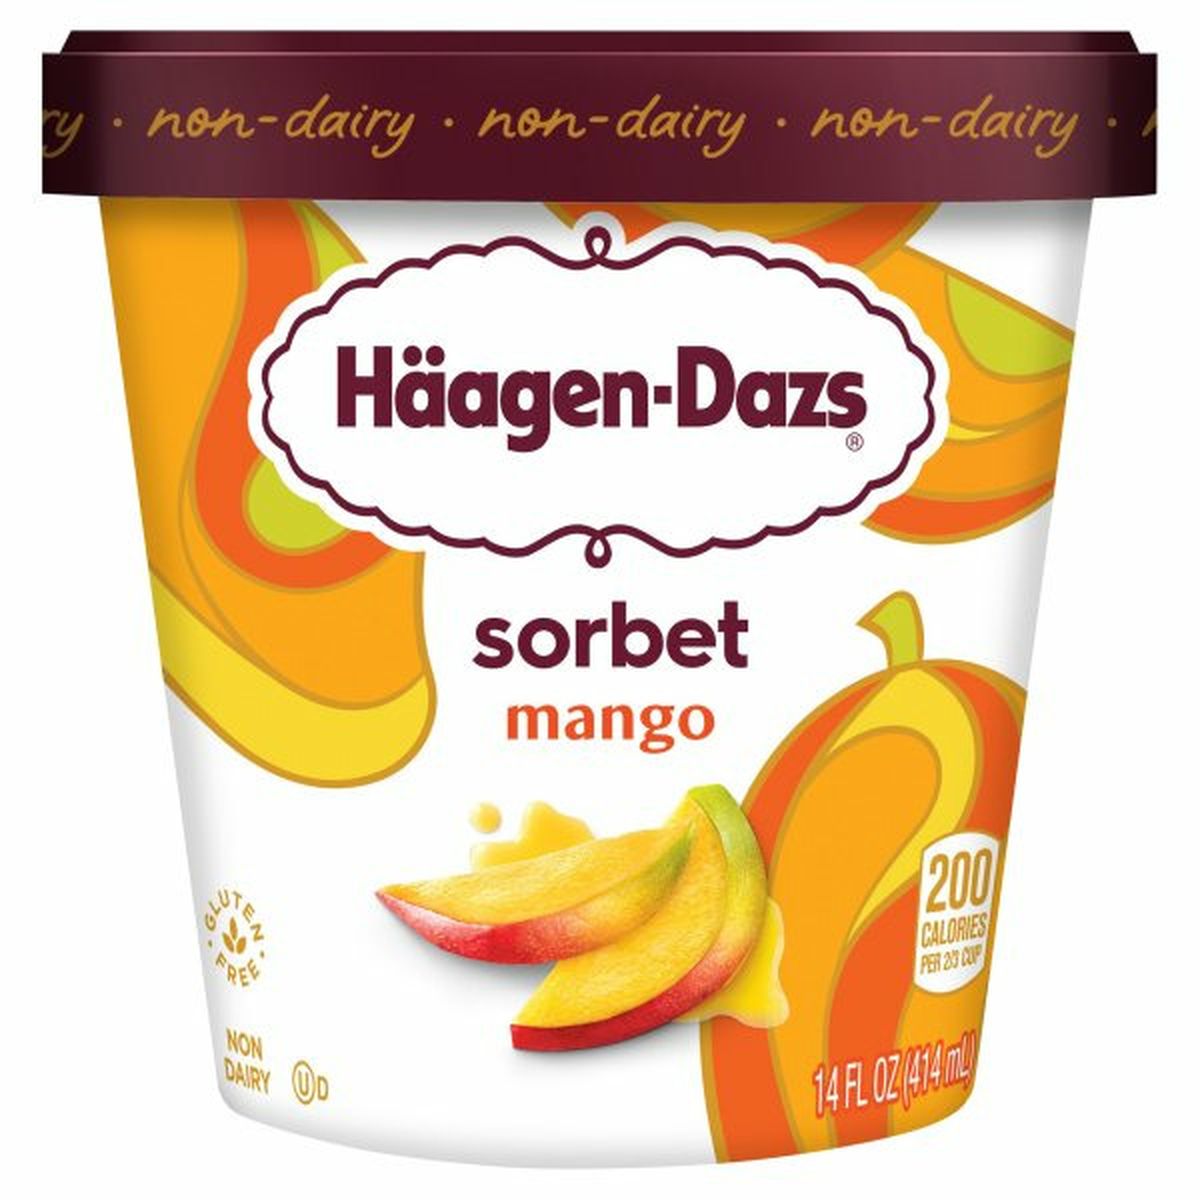 Calories in Haagen-Dazs Sorbet, Mango